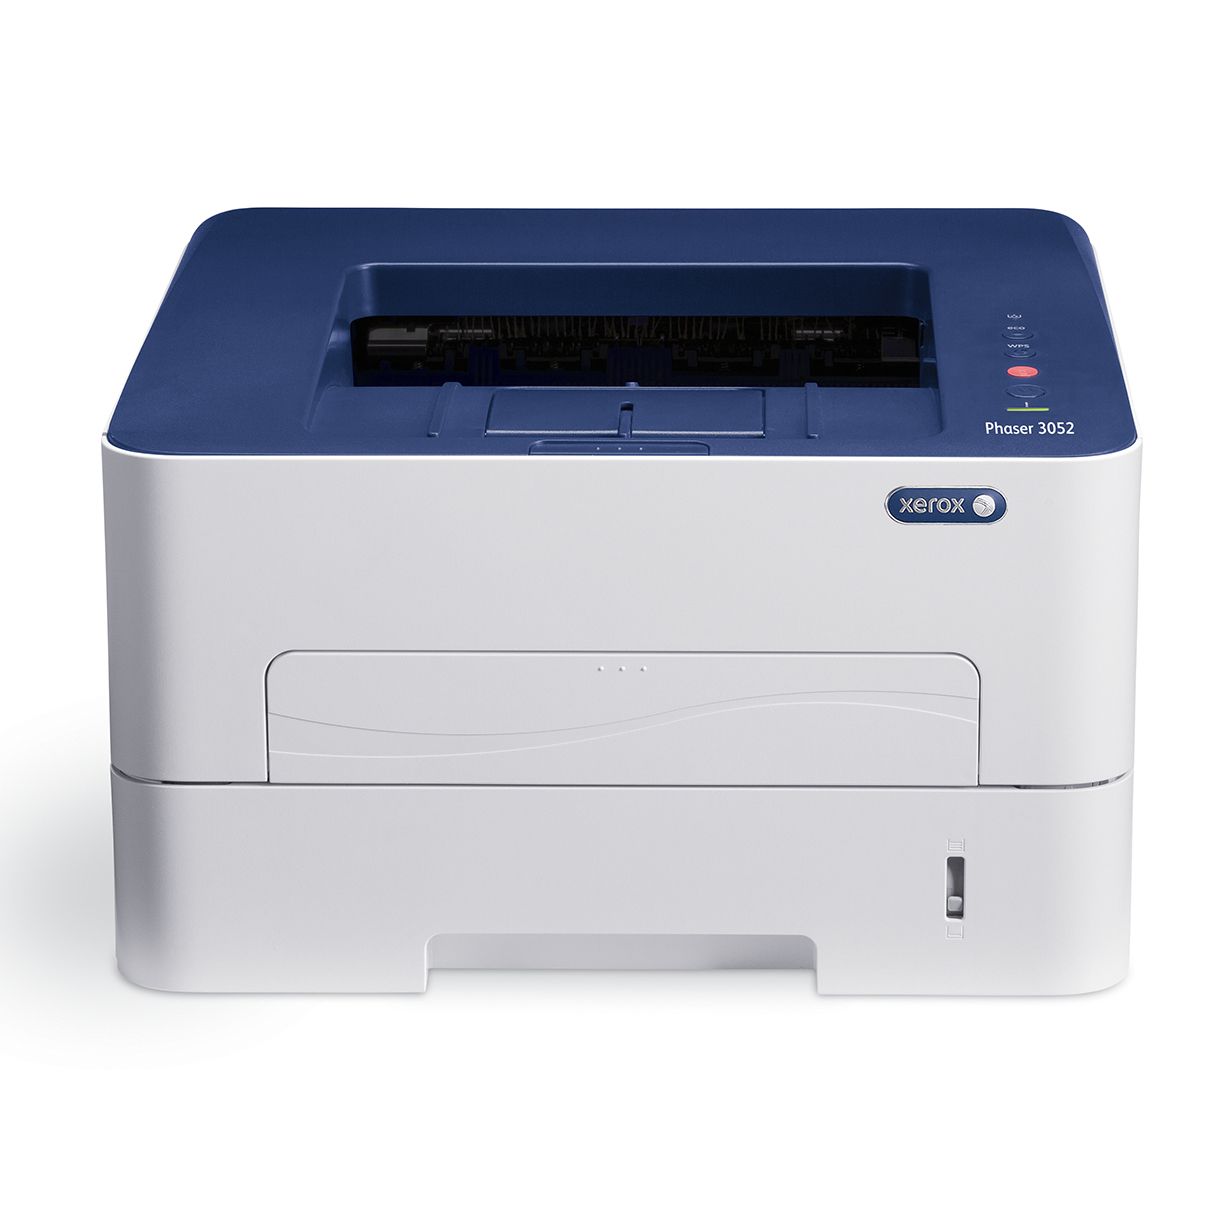  Imprimanta laser alb-negru Xerox Phaser 3052, Wireless, A4 